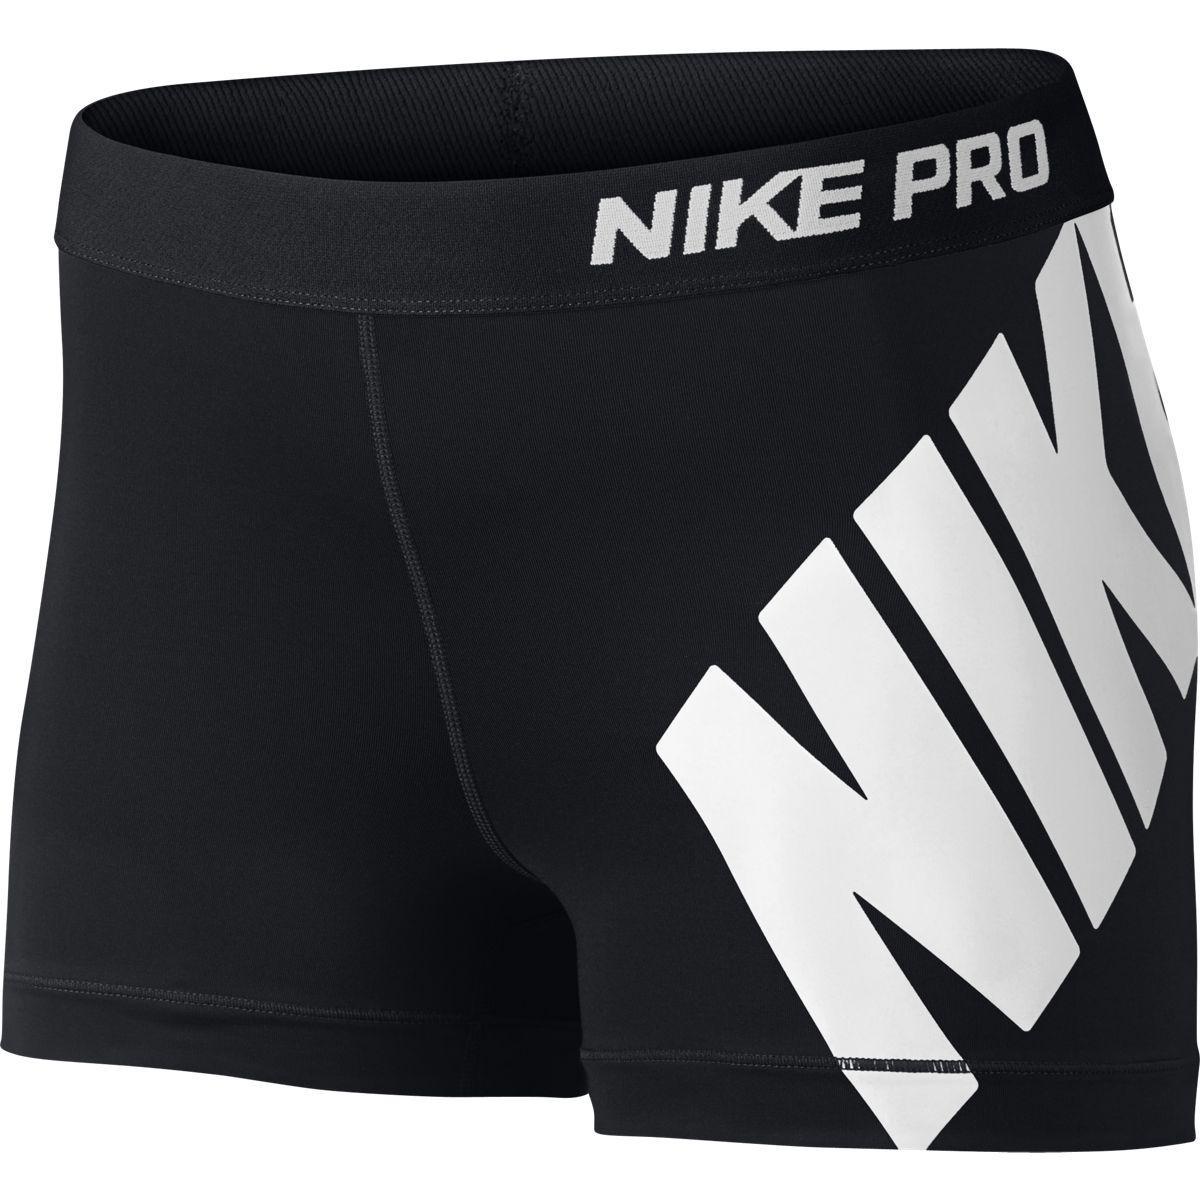 Nike pro Logos